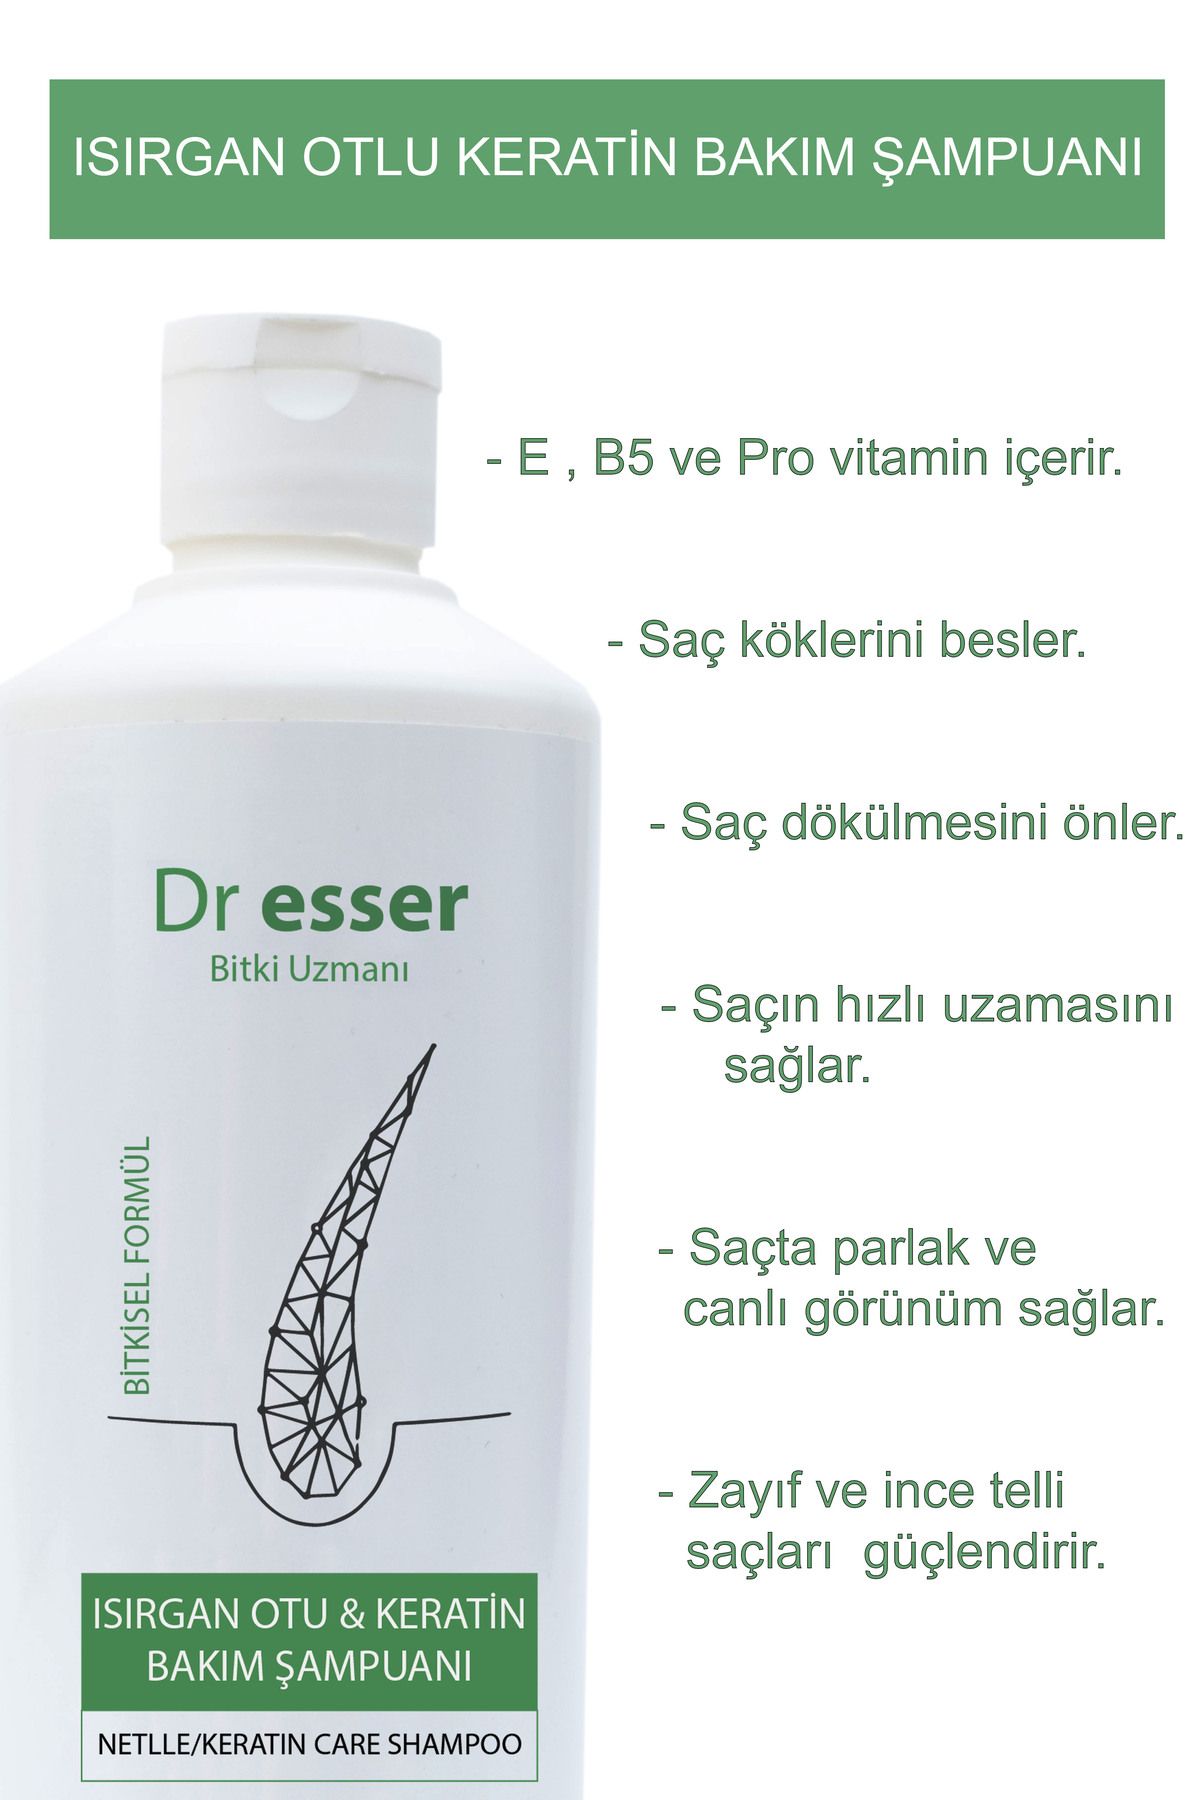 Dr esser bitki uzmanı Isırgan Otlu Keratin Bakım Şampuanı (BİTKİSEL FORMÜL).